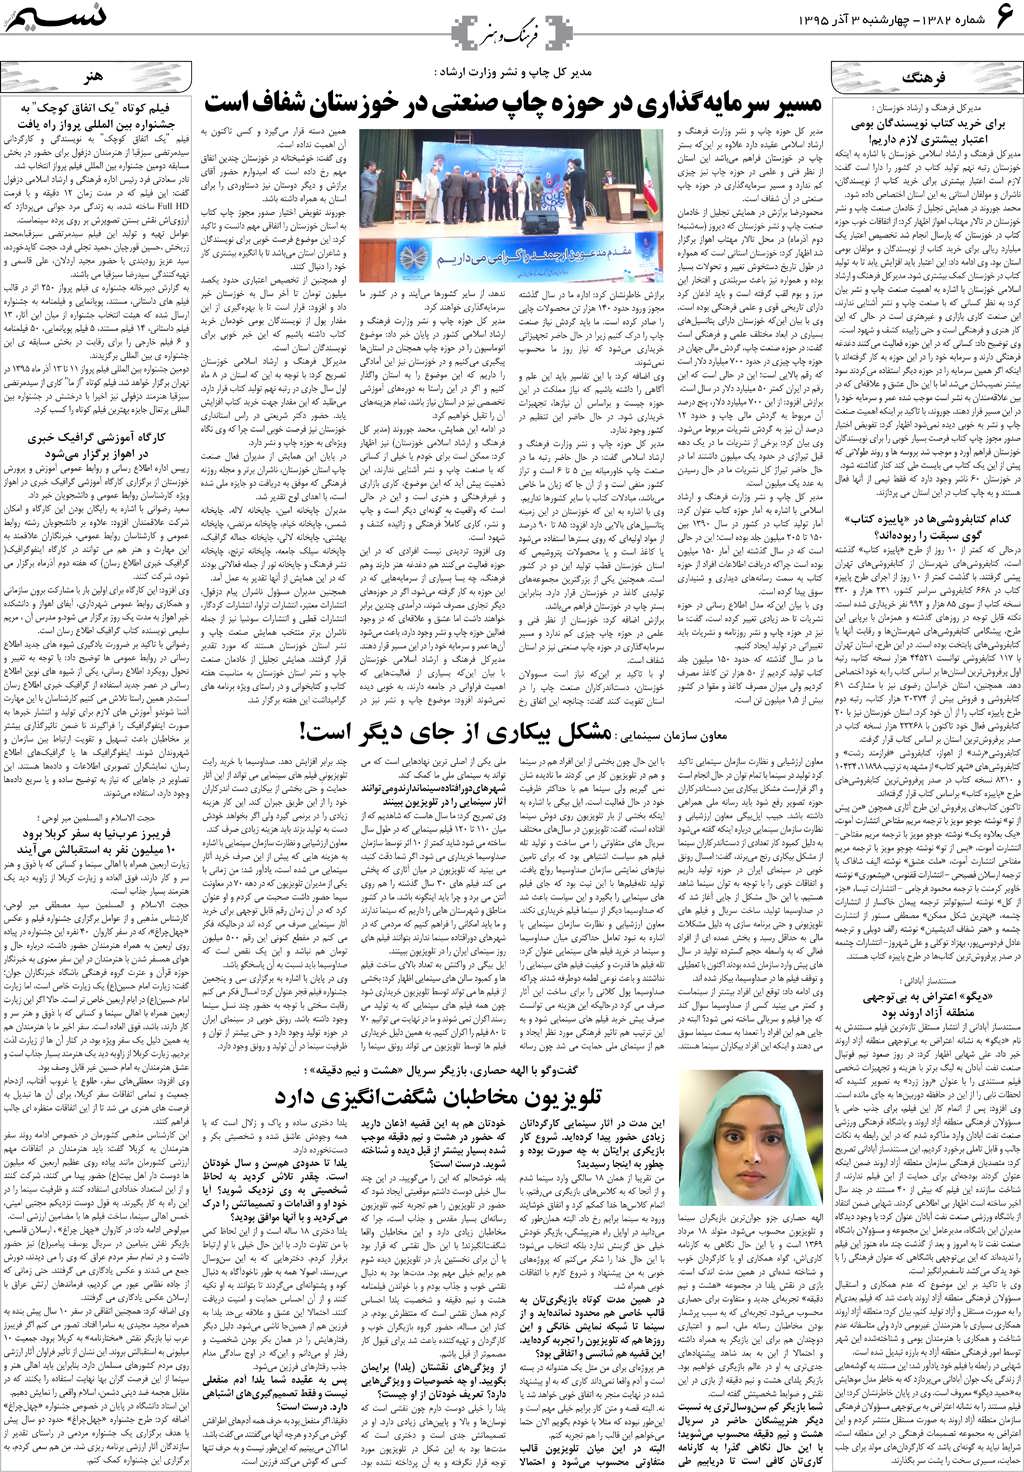 صفحه فرهنگ و هنر روزنامه نسیم شماره 1382